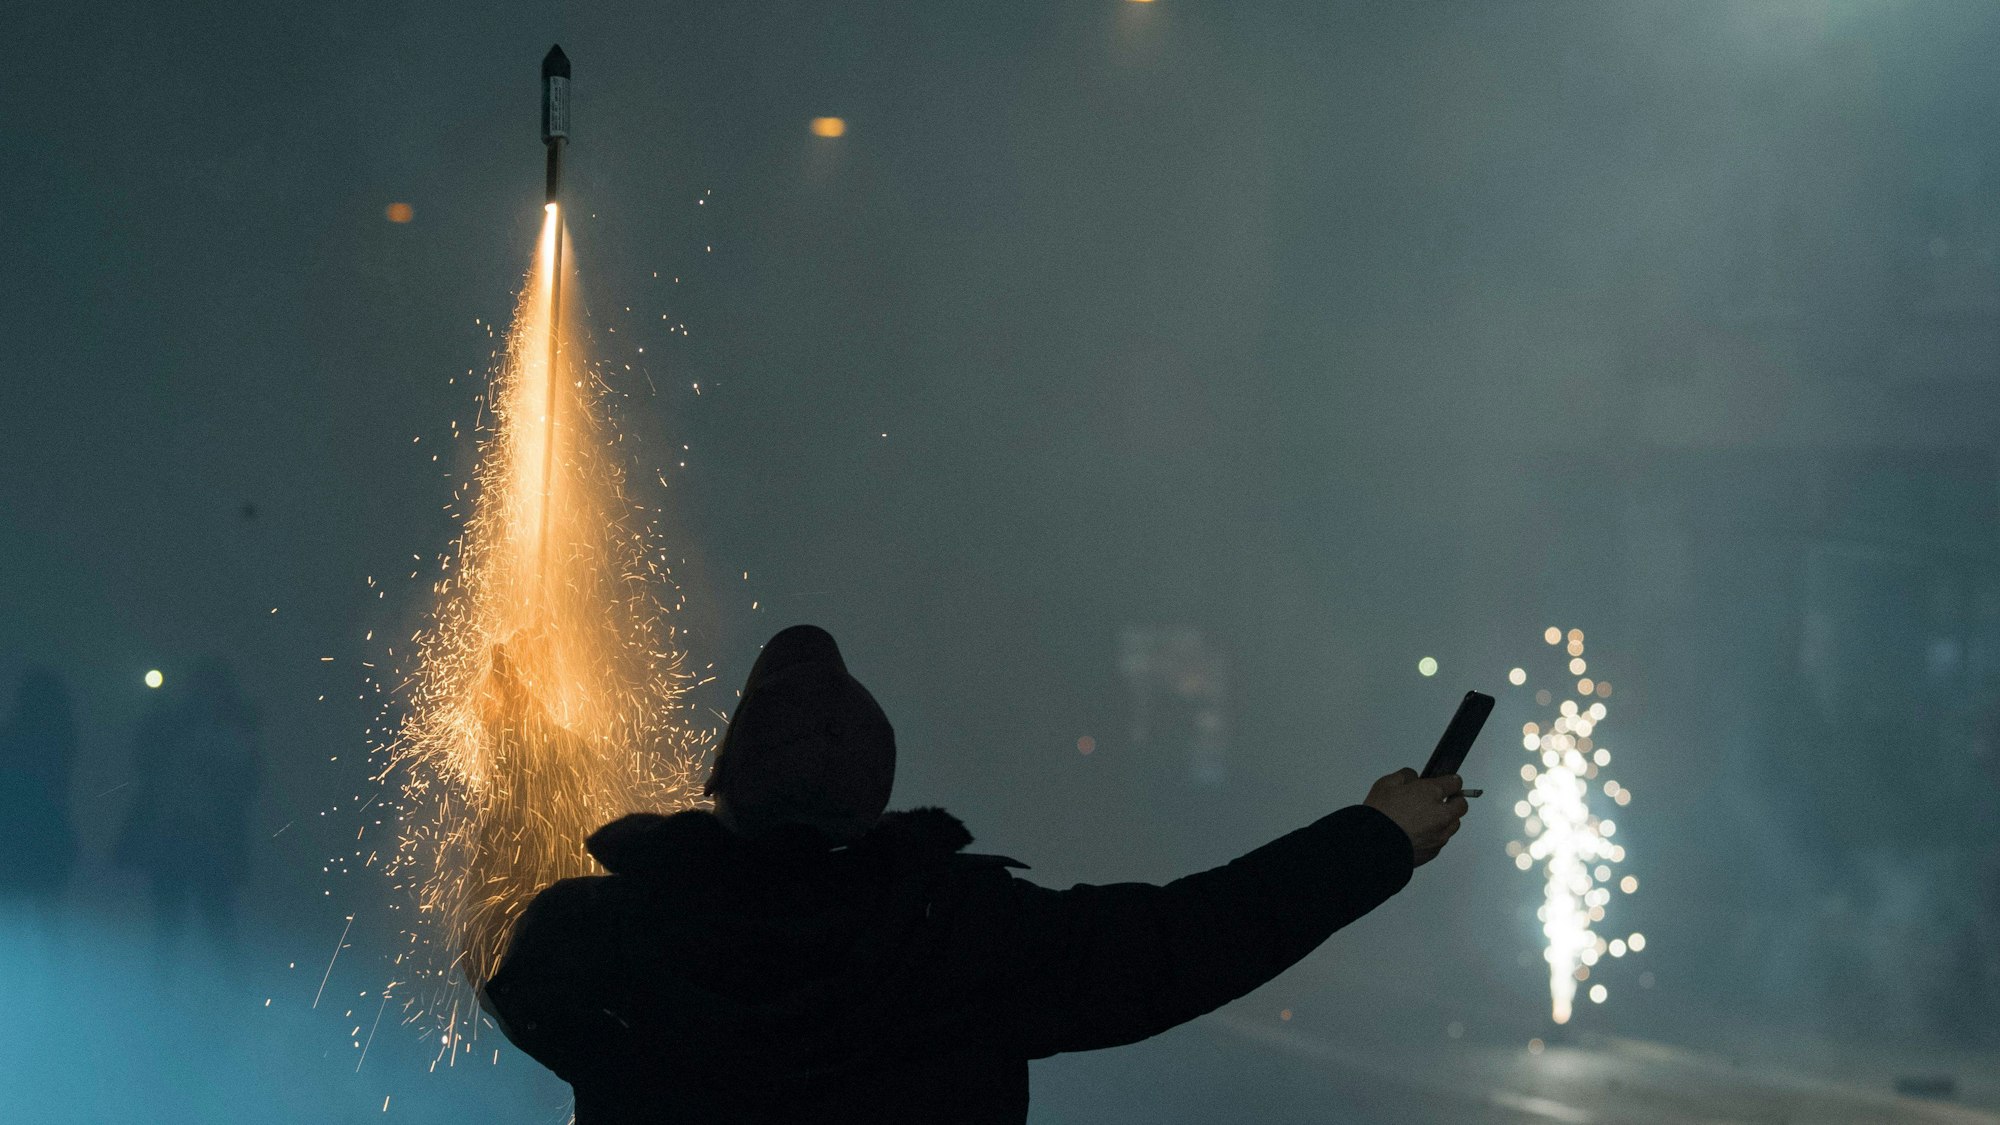 Eine Person hält auf einer Straße in der einen Hand eine zündende Rakete, in der anderen einen Böller, im Hintergrund Rauchschwaden von Feuerwerk.